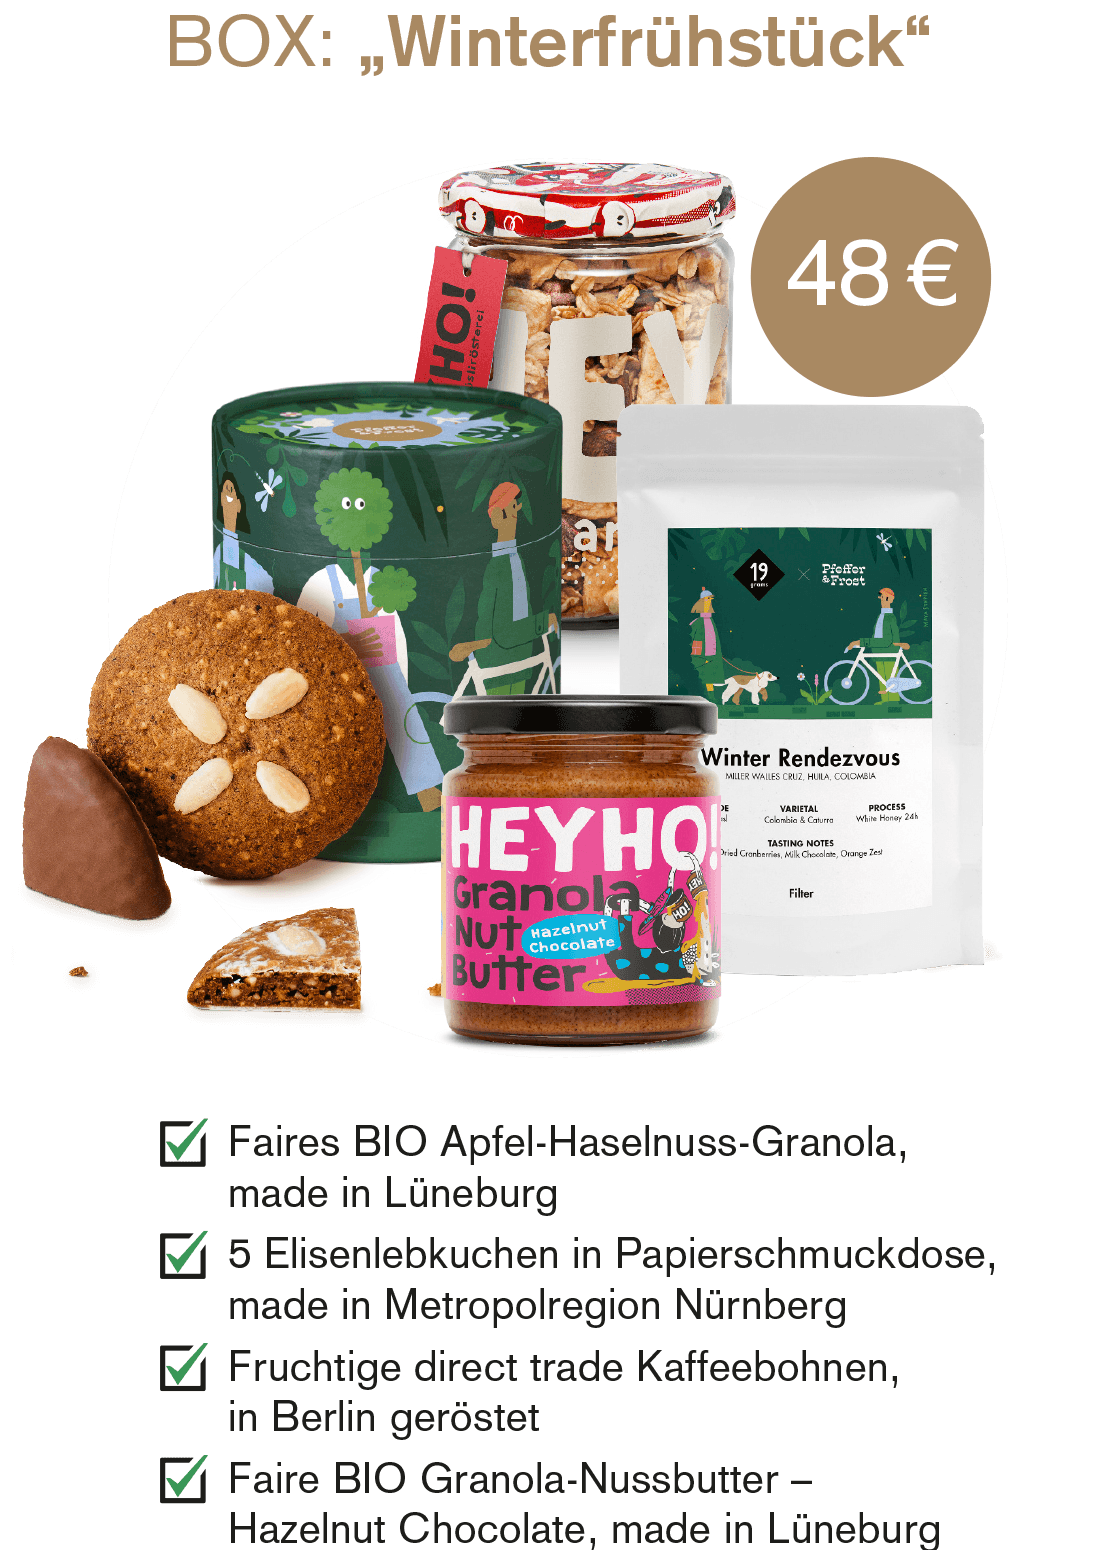 Weihnachts-Geschenkebox "Winterfrühstück" für 48 Euro